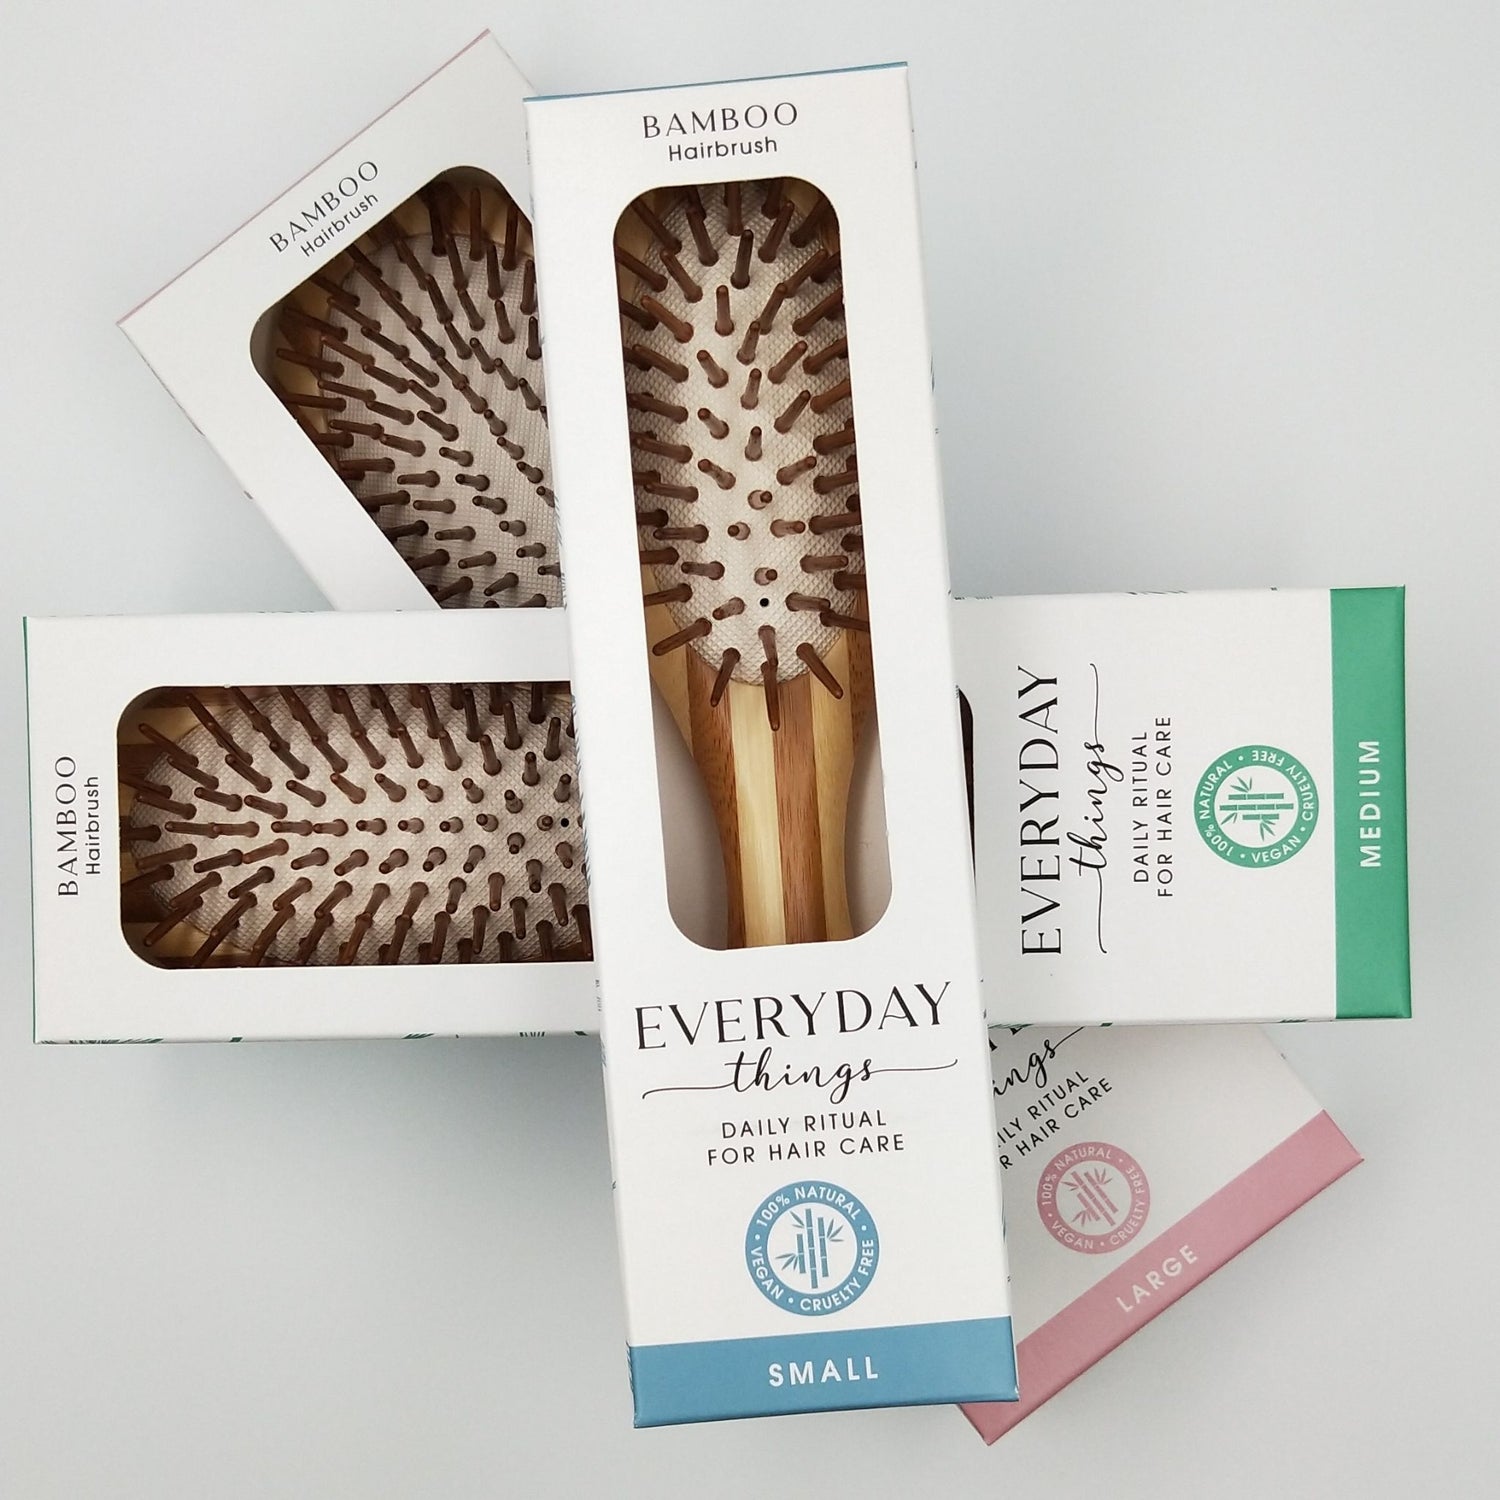 Everyday Things bamboo hairbrush NZ